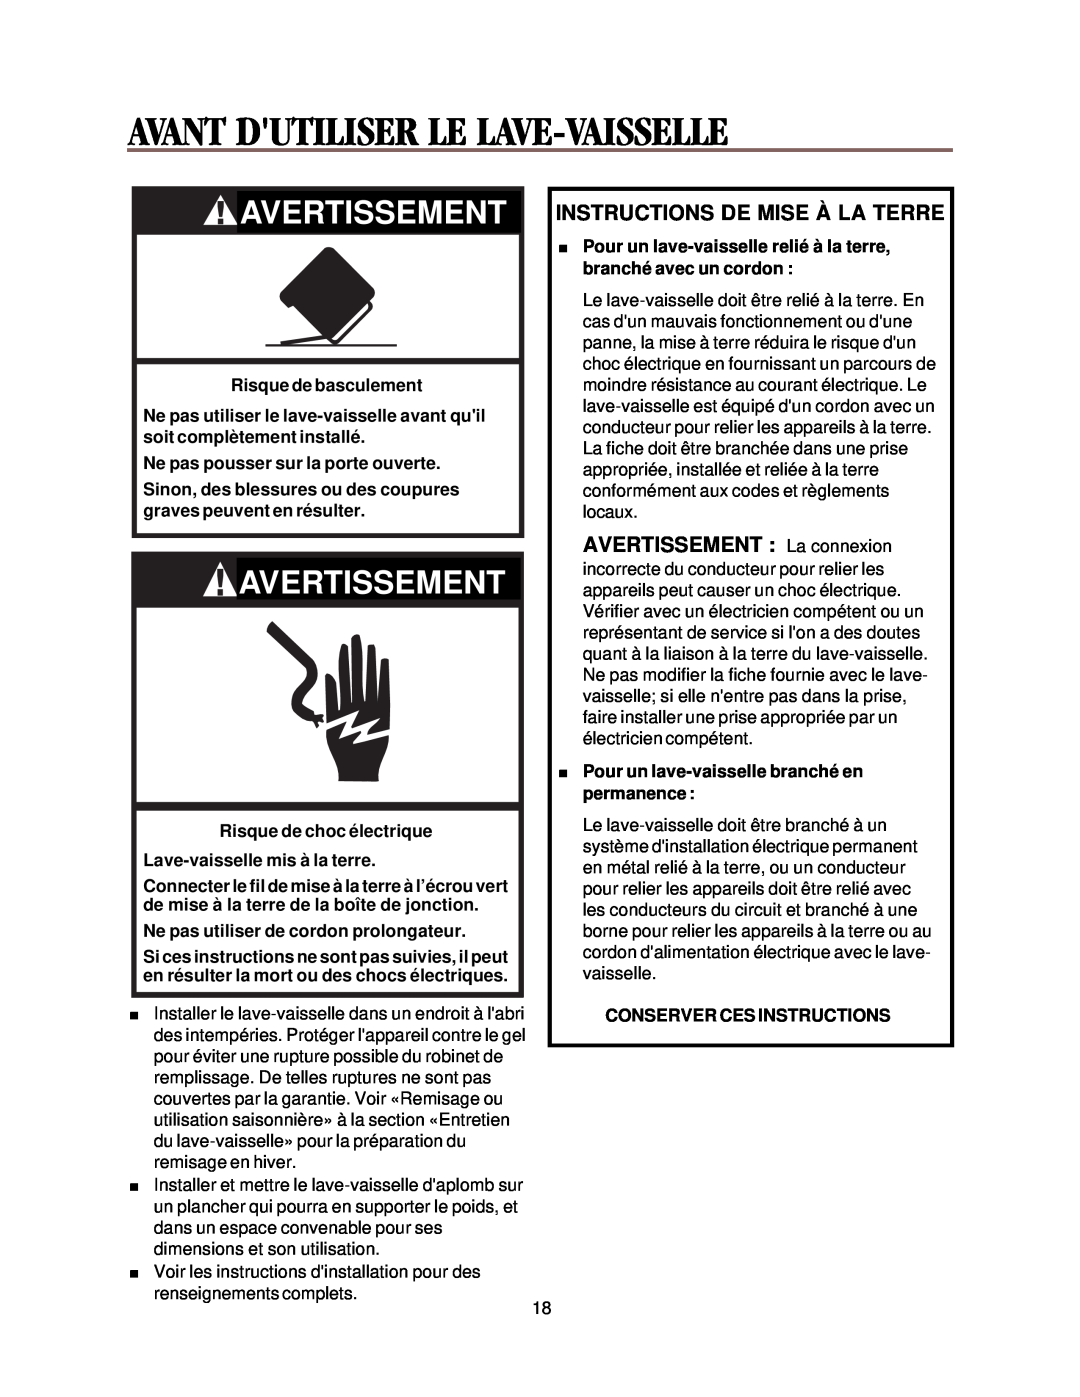 Whirlpool DU018DW manual Avant Dutiliser Le Lave-Vaisselle, Instructions De Mise À La Terre, Avertissement 